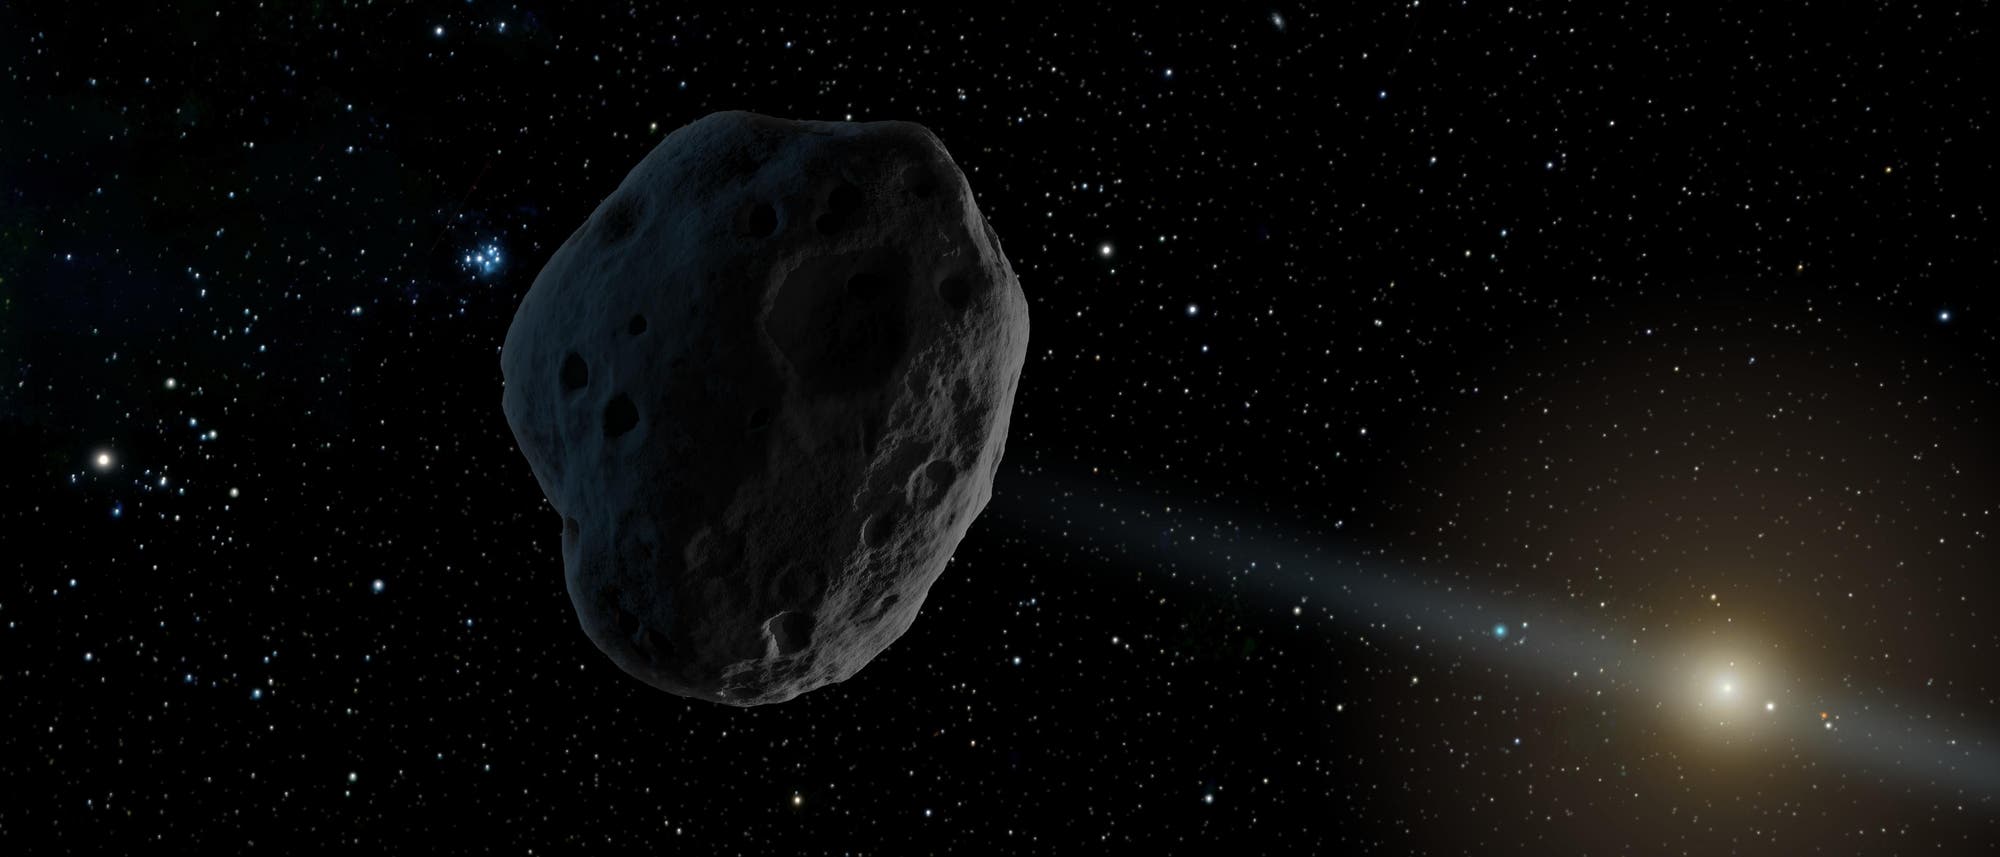 Künstlerische Darstellung eines Asteroiden